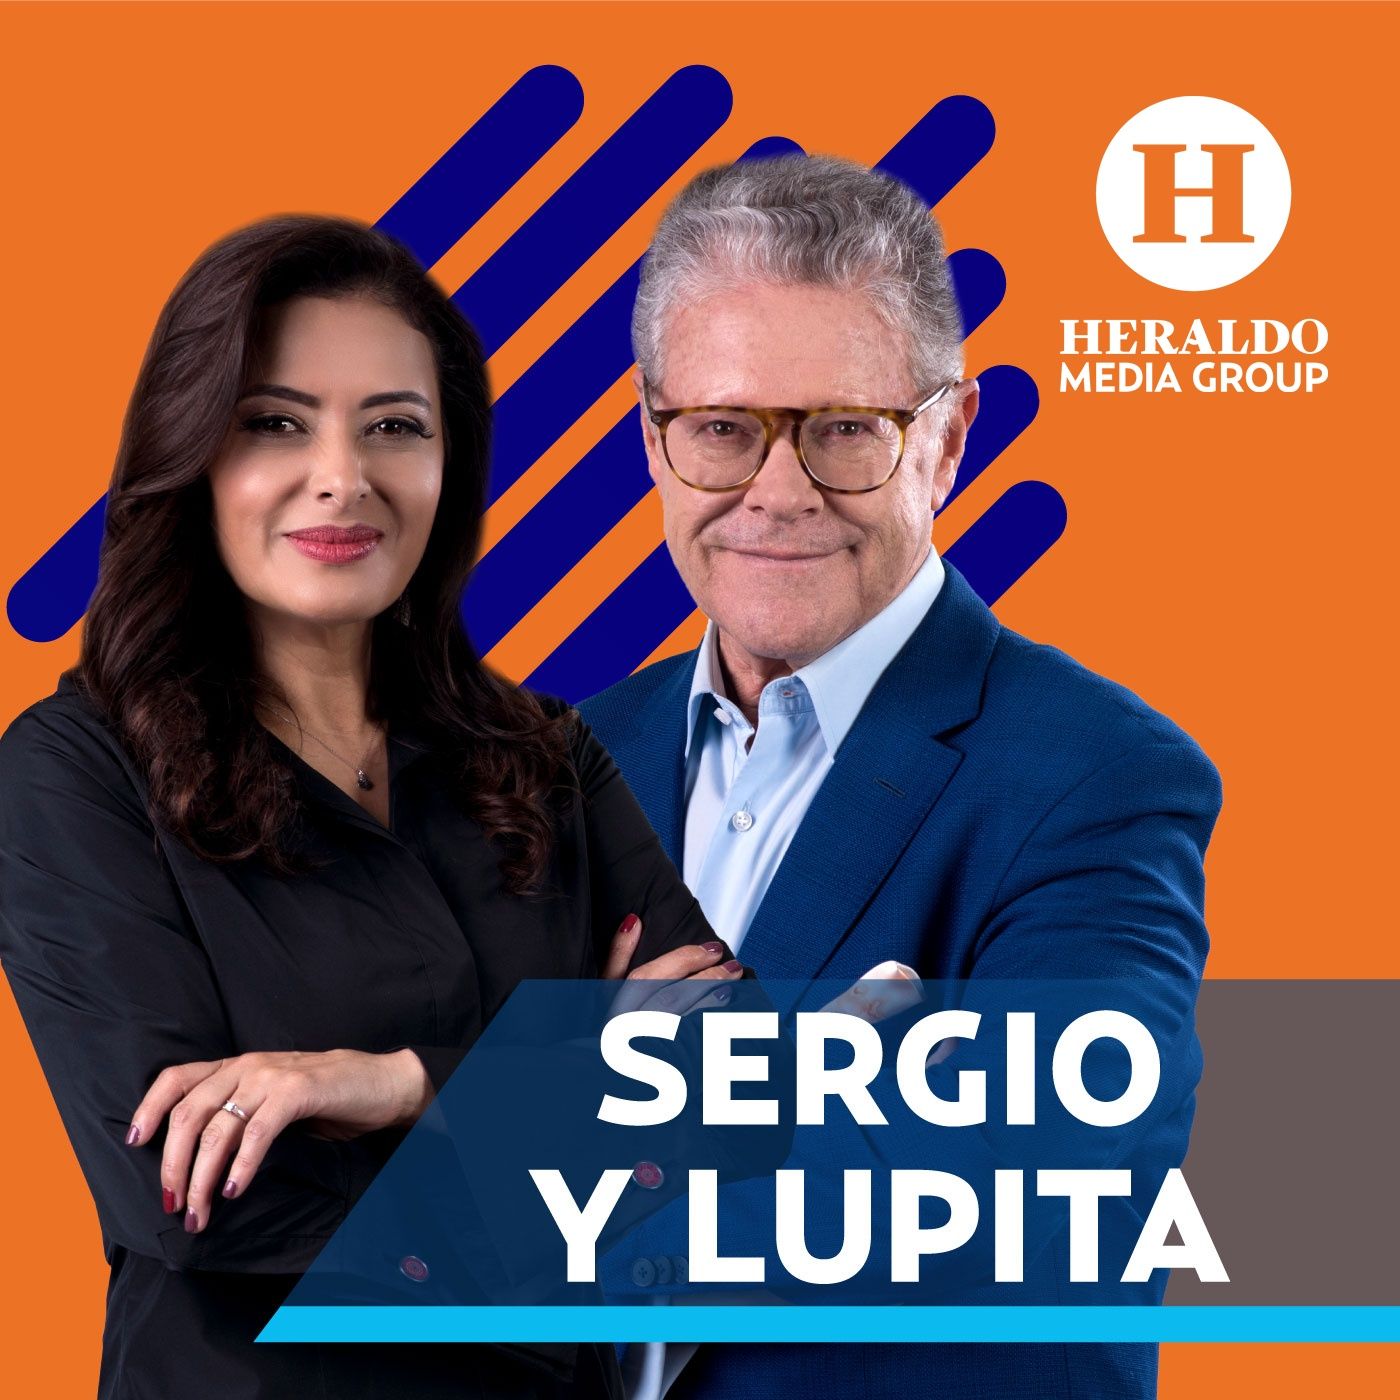 Sergio Sarmiento y Lupita Juárez | Programa completo miércoles 3 de noviembre 2021